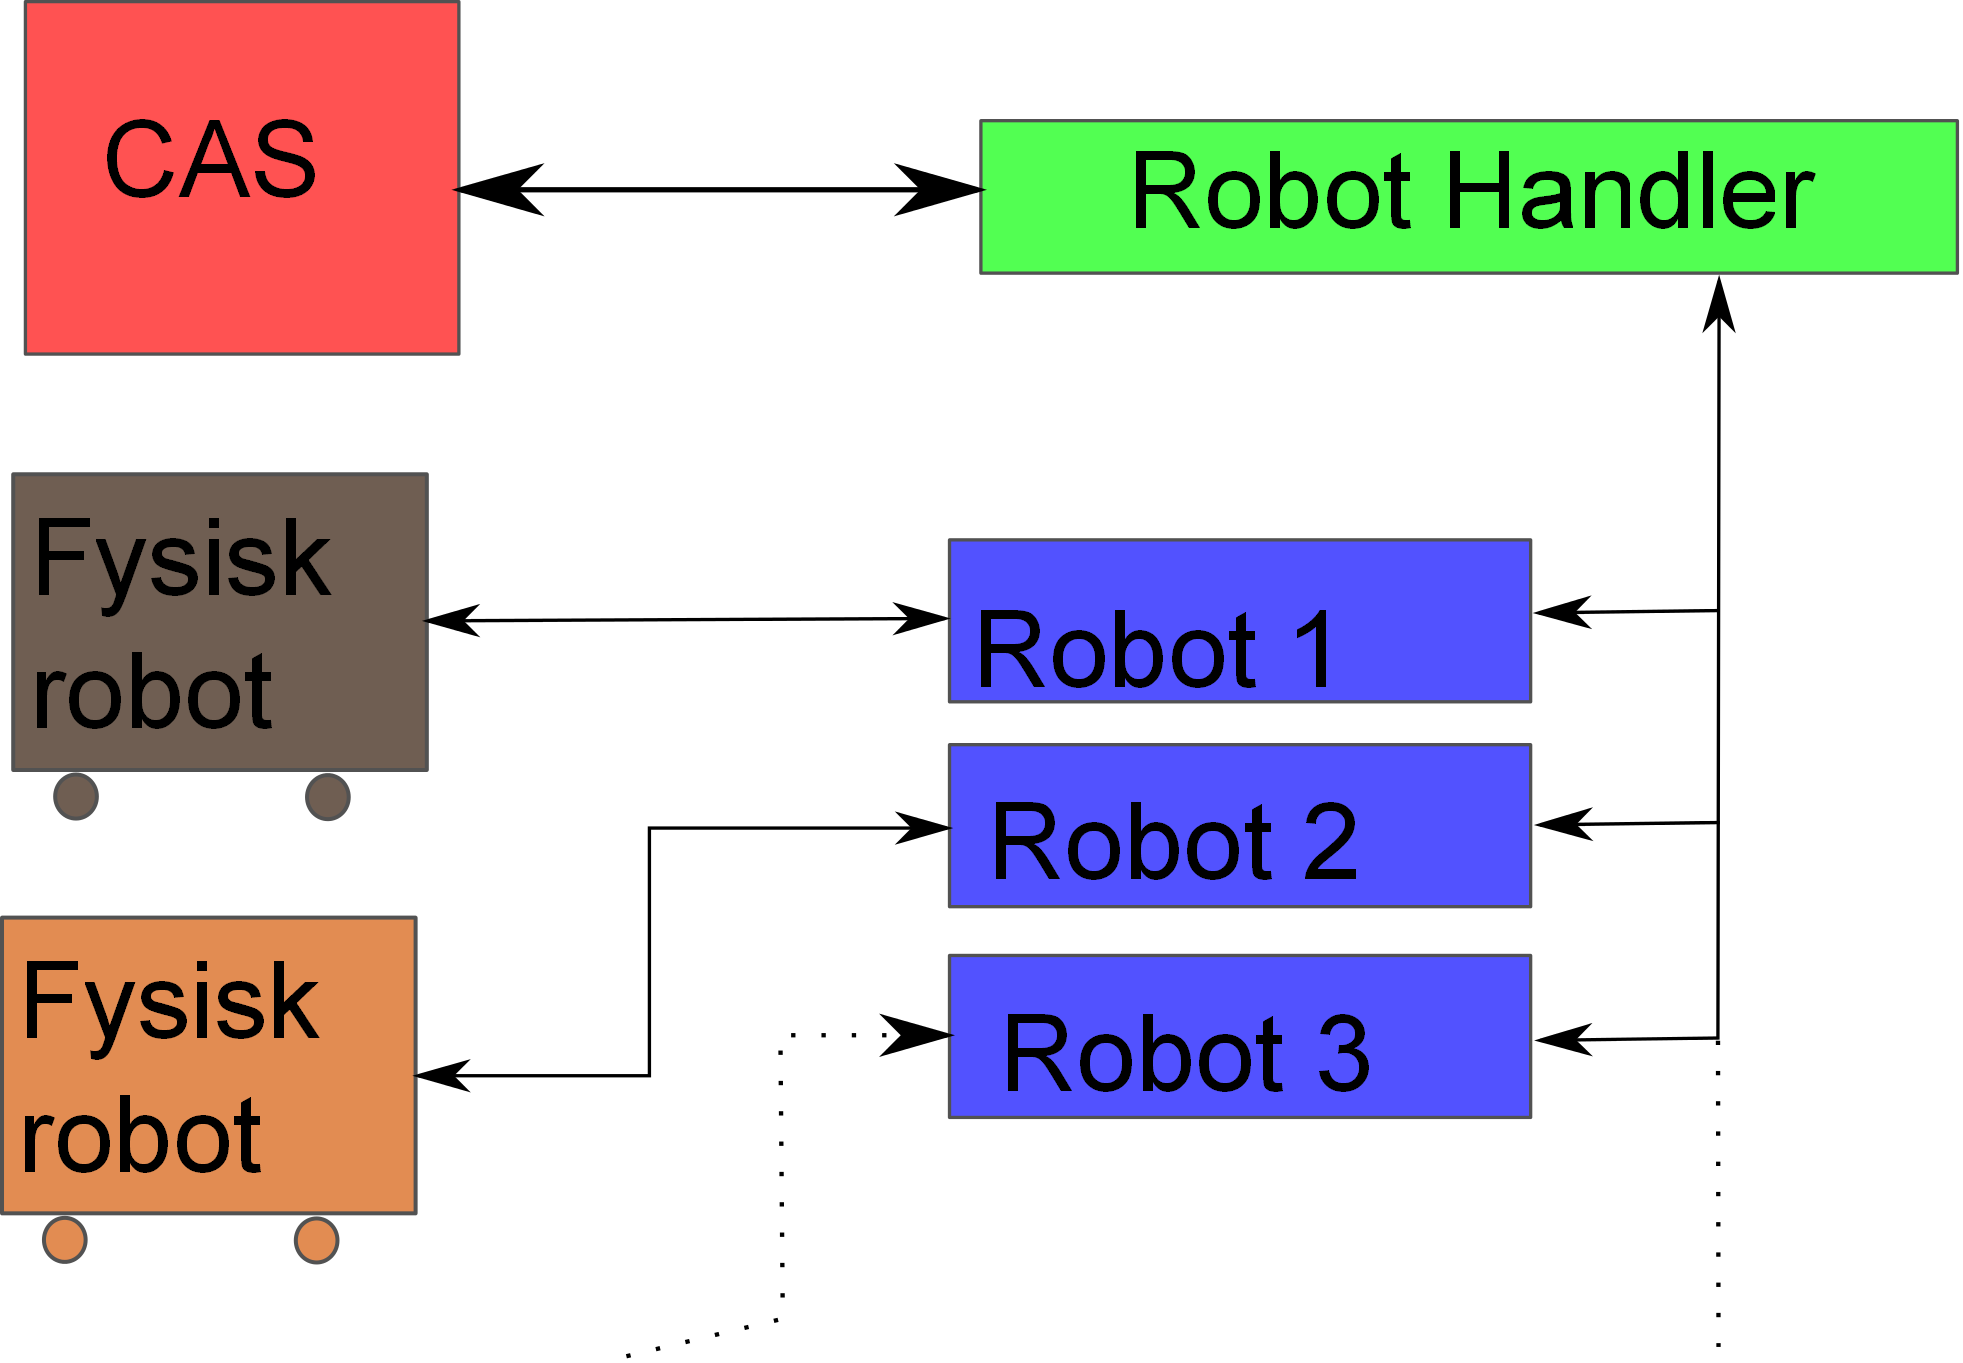 Figur 3.1: Struktur på systemet med et grensesnitt mot robotene. Robotene er ment som alternativer. Det er ikke mulig å opperere mer enn én robot av gangen med nåværende programvare.